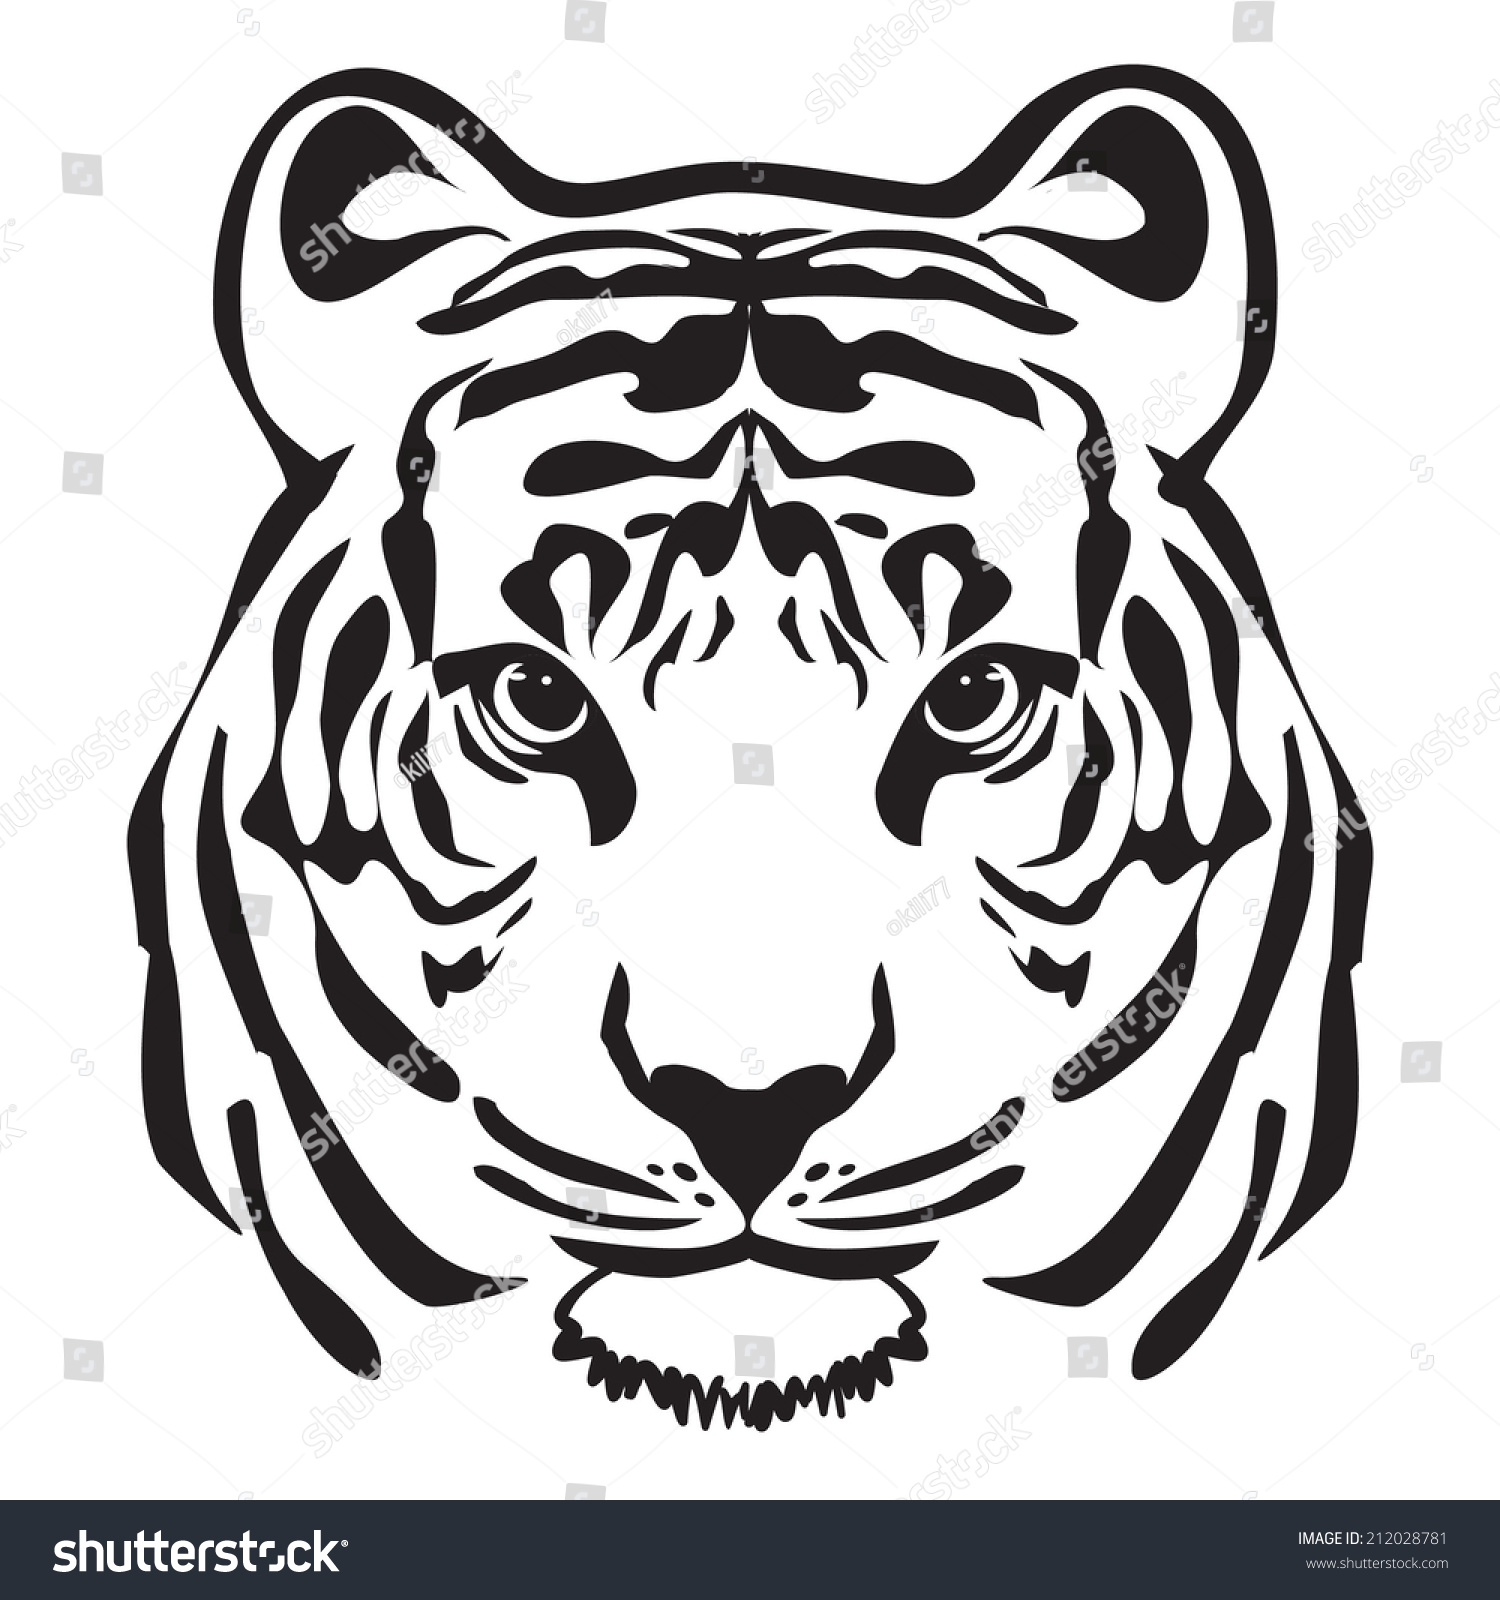 Tiger Head Outline Vector Stock Vector 212028781 - Shutterstock